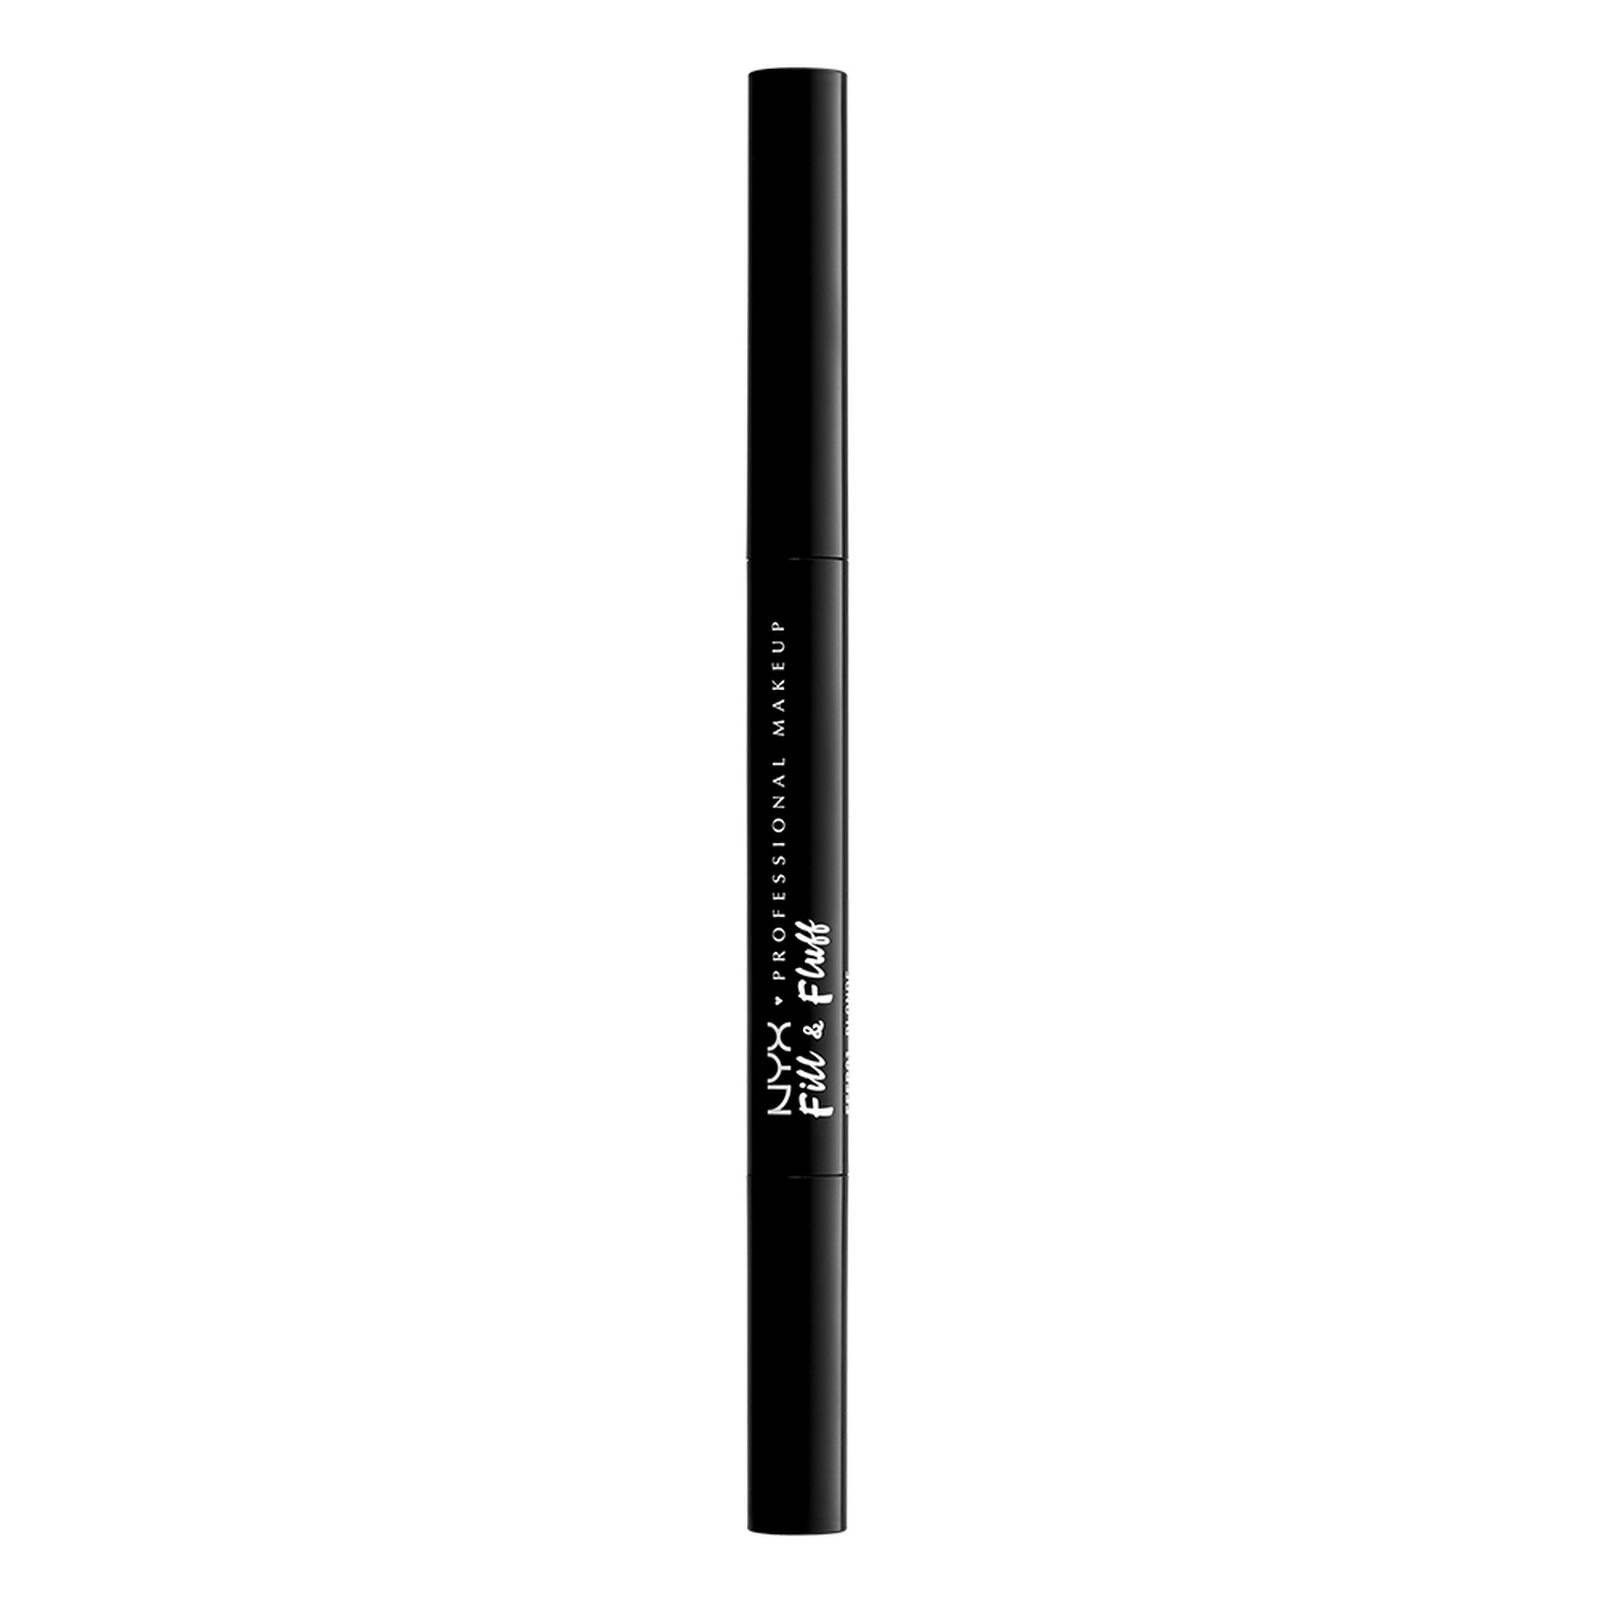 Augenbrauen-Stift - Fill & Fluff Eyebrow Pomade Pencil